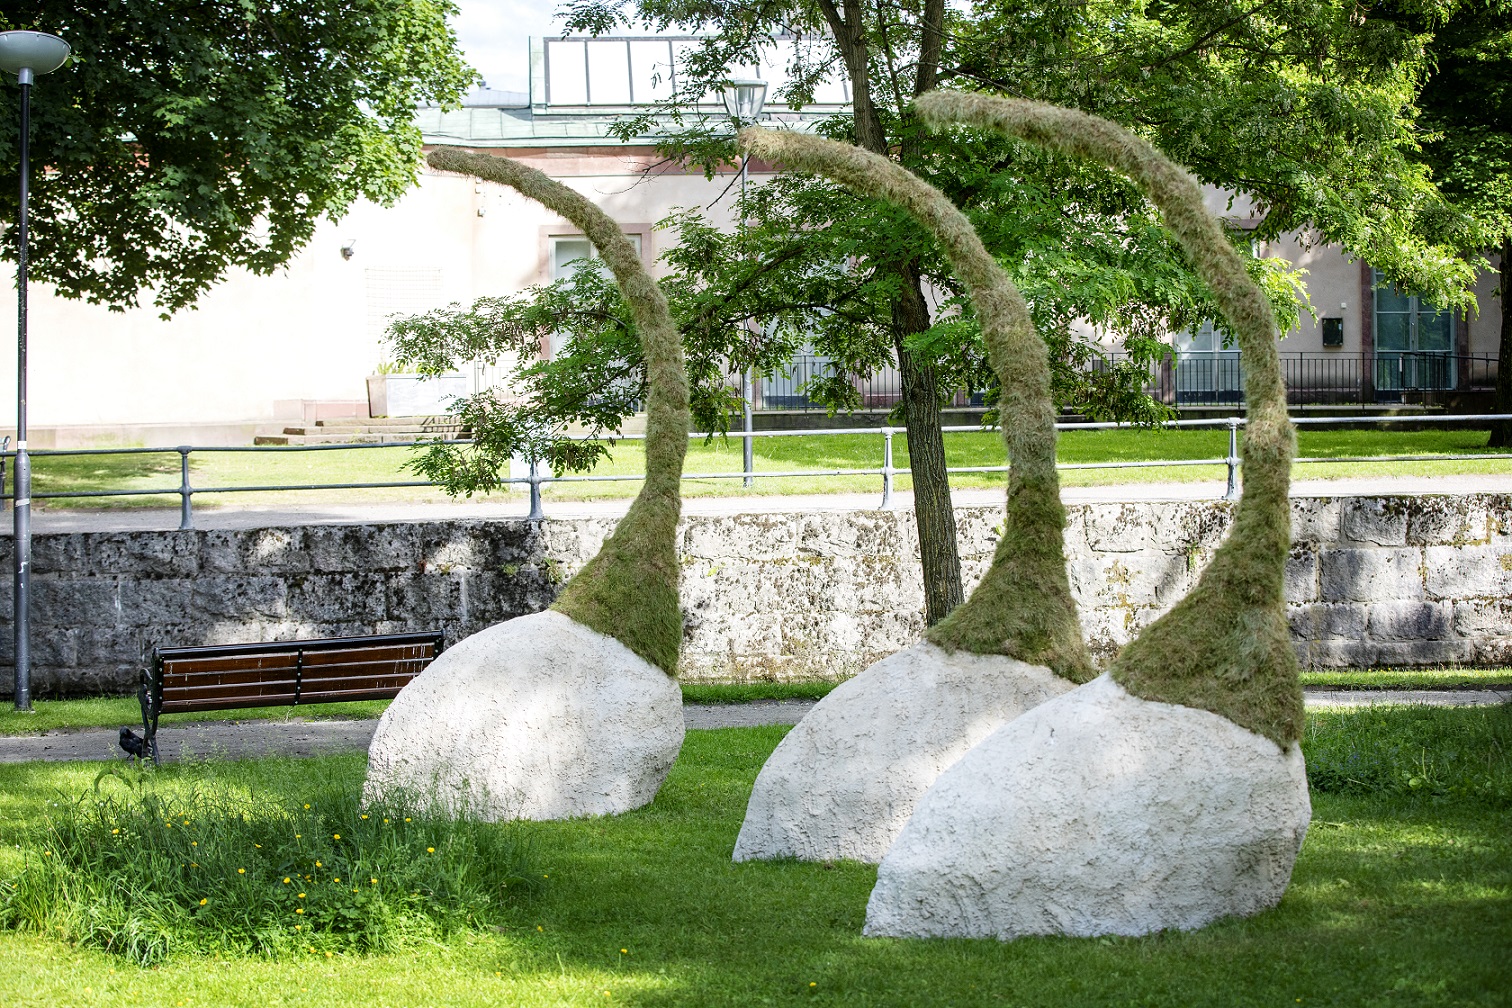 Tre konstverk växer upp ur gräsmattan. Underdelen består av en betong klump som sedan möter mossa som växer uppåt liknande en form som en tomteluva.